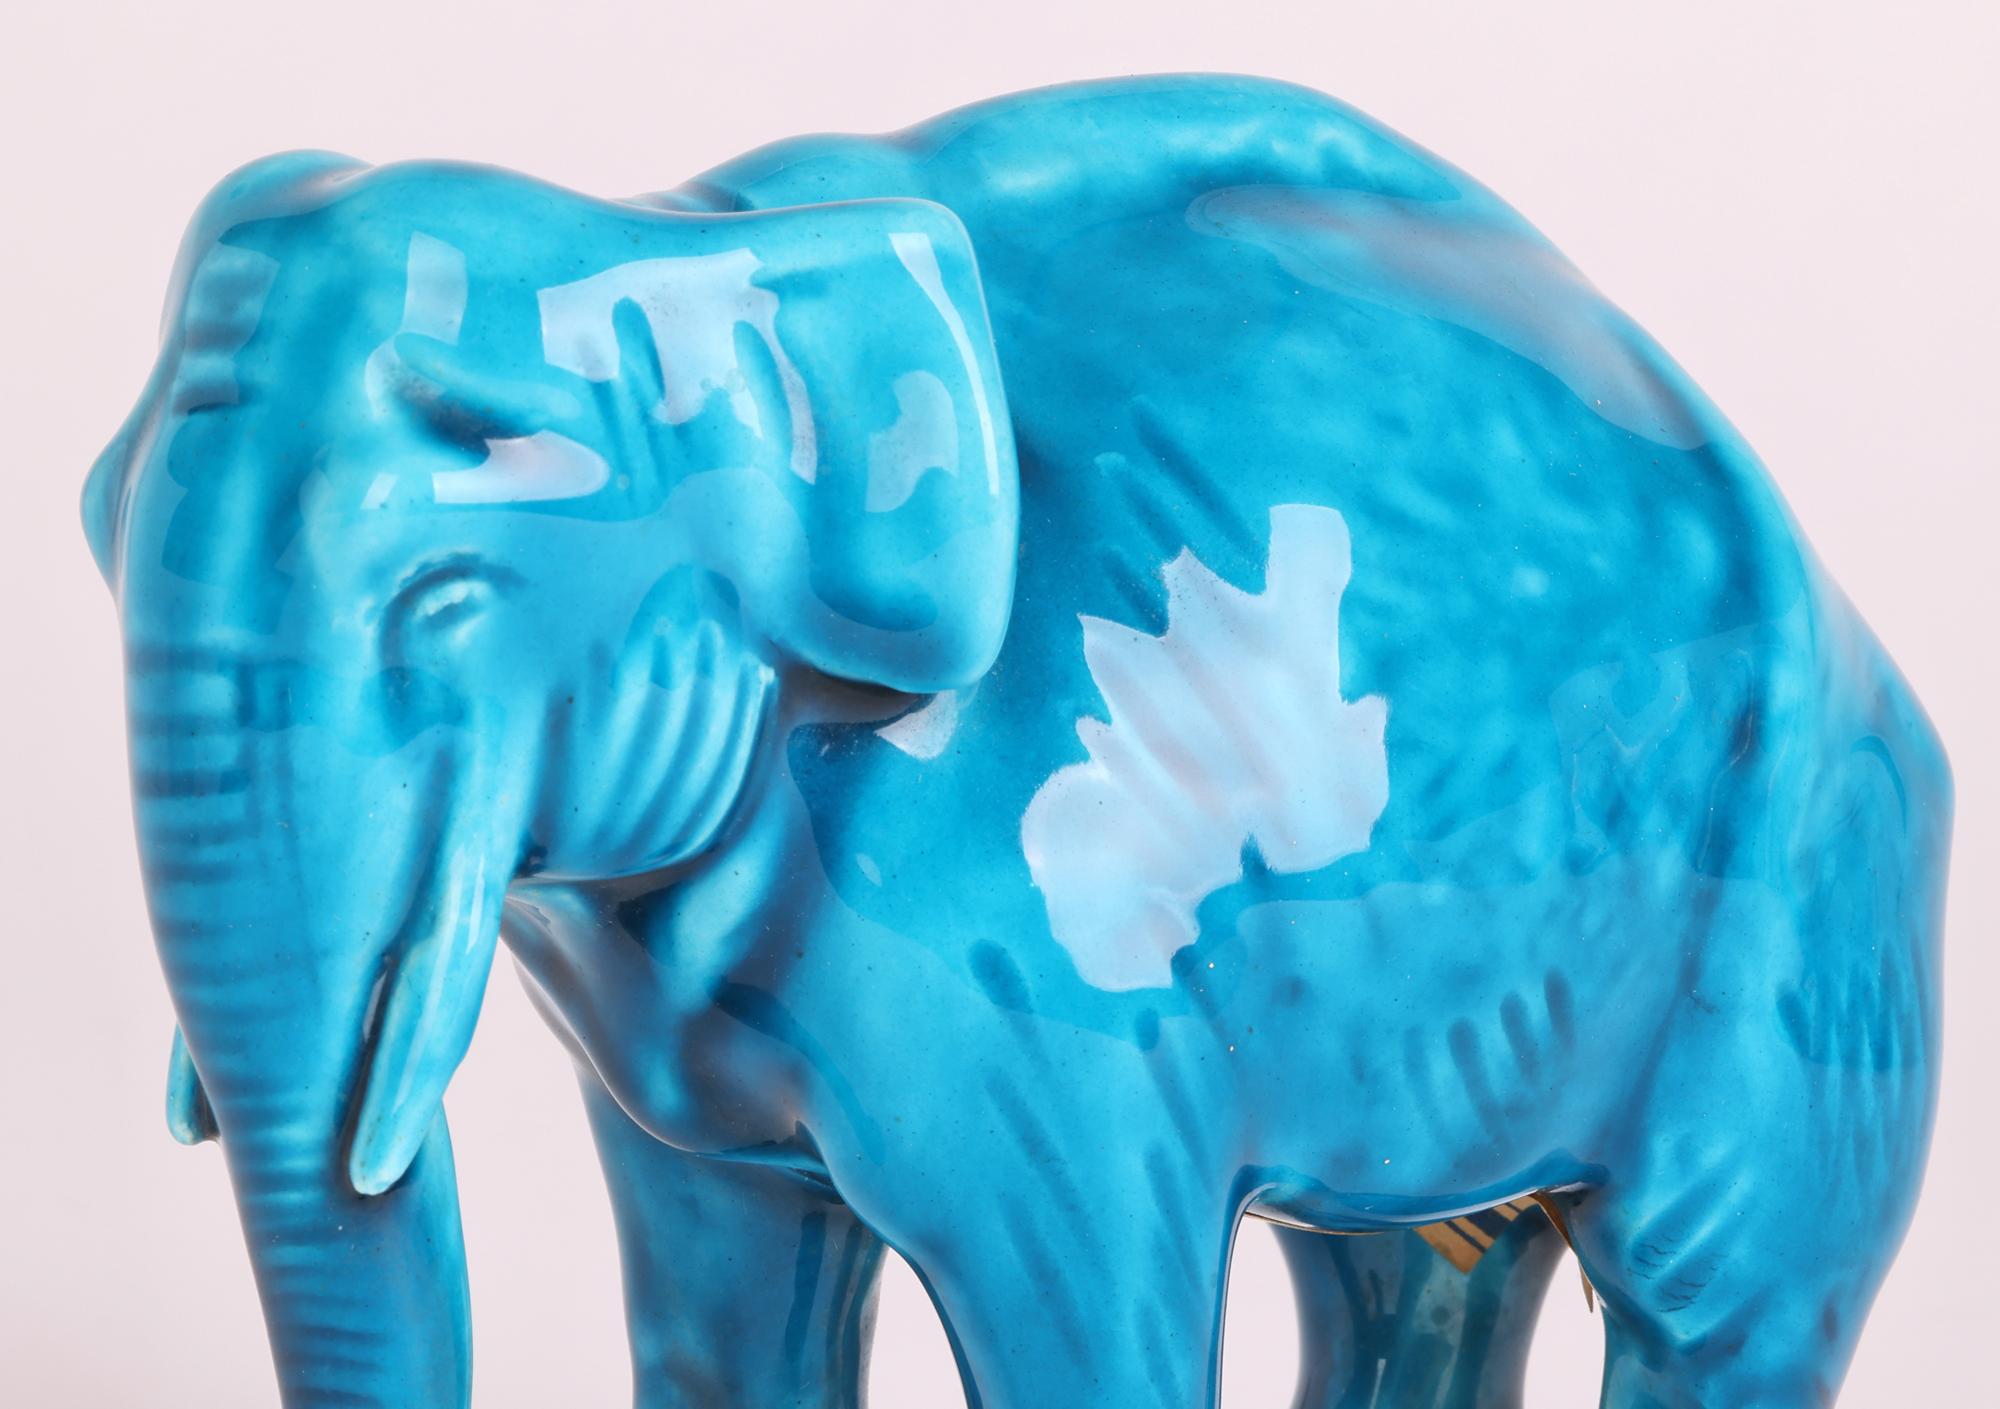 Eine sehr schöne und gut modellierte französische Sevres-Keramikfigur eines Elefanten mit türkisfarbener Glasur von dem bekannten französischen Keramiker Paul Milet (Franzose, 1870-1950) aus der Zeit um 1920. Der stehende Elefant ist gut